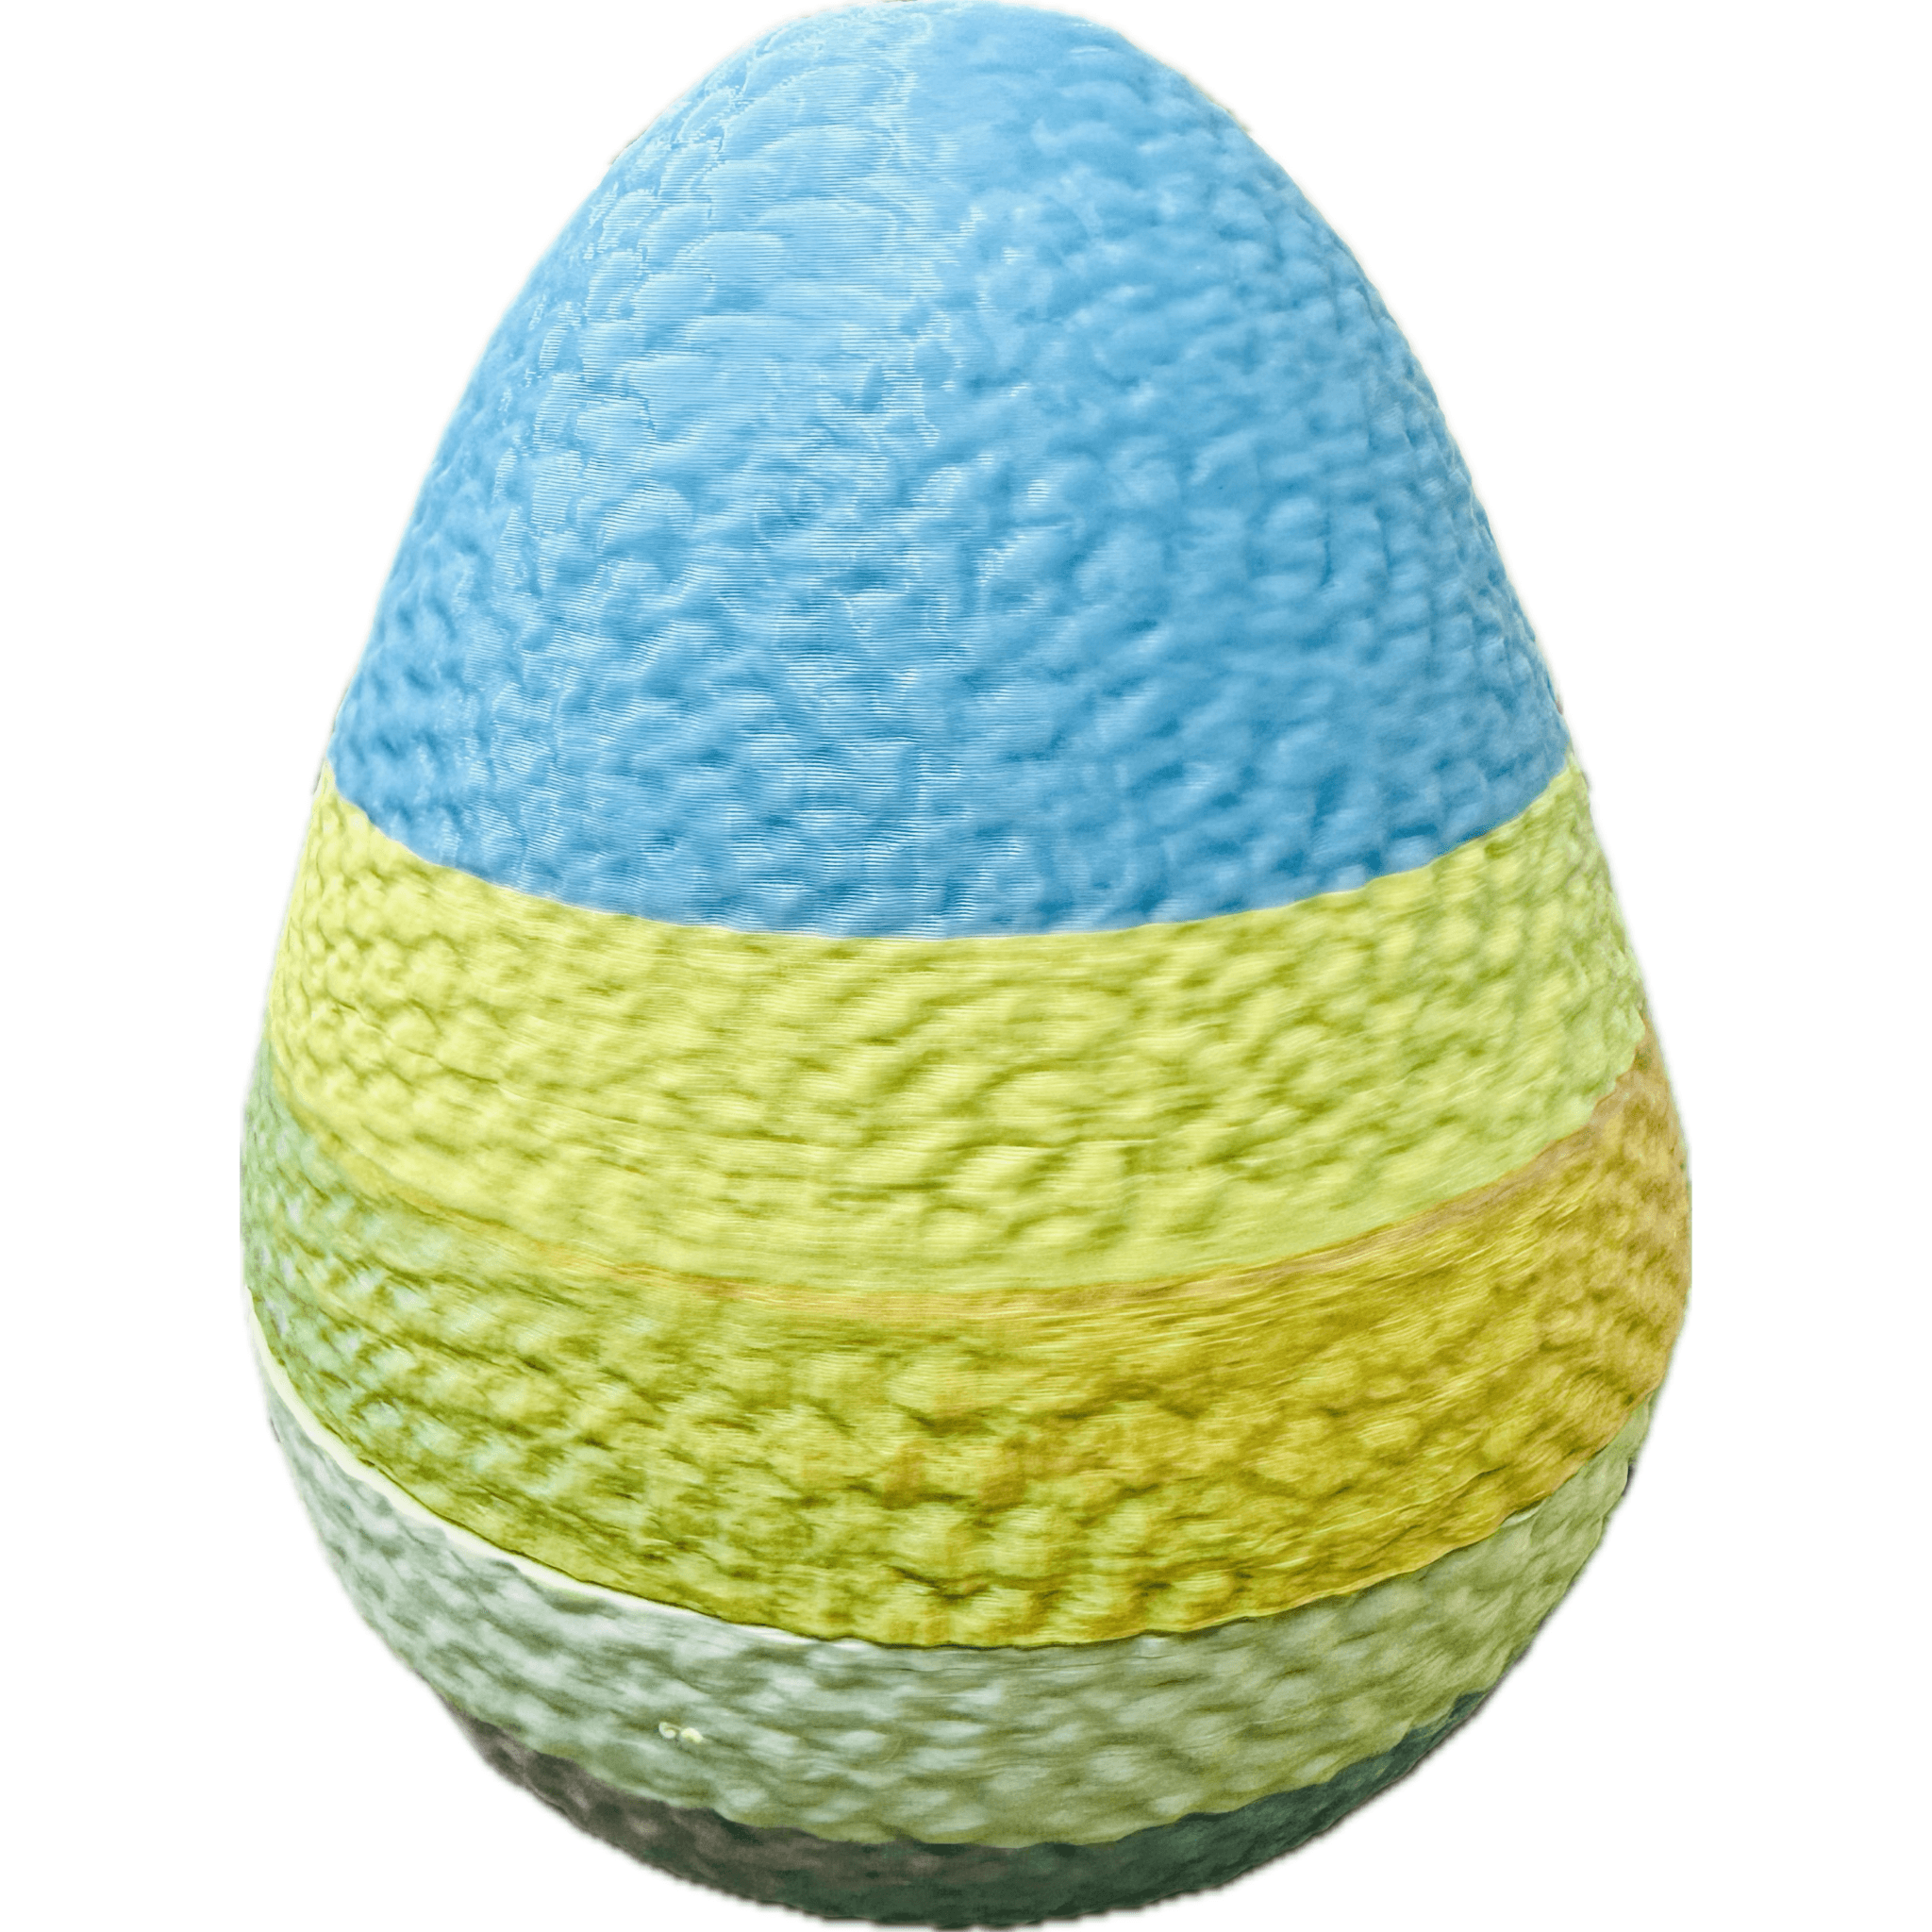 Textured Egg 3d model